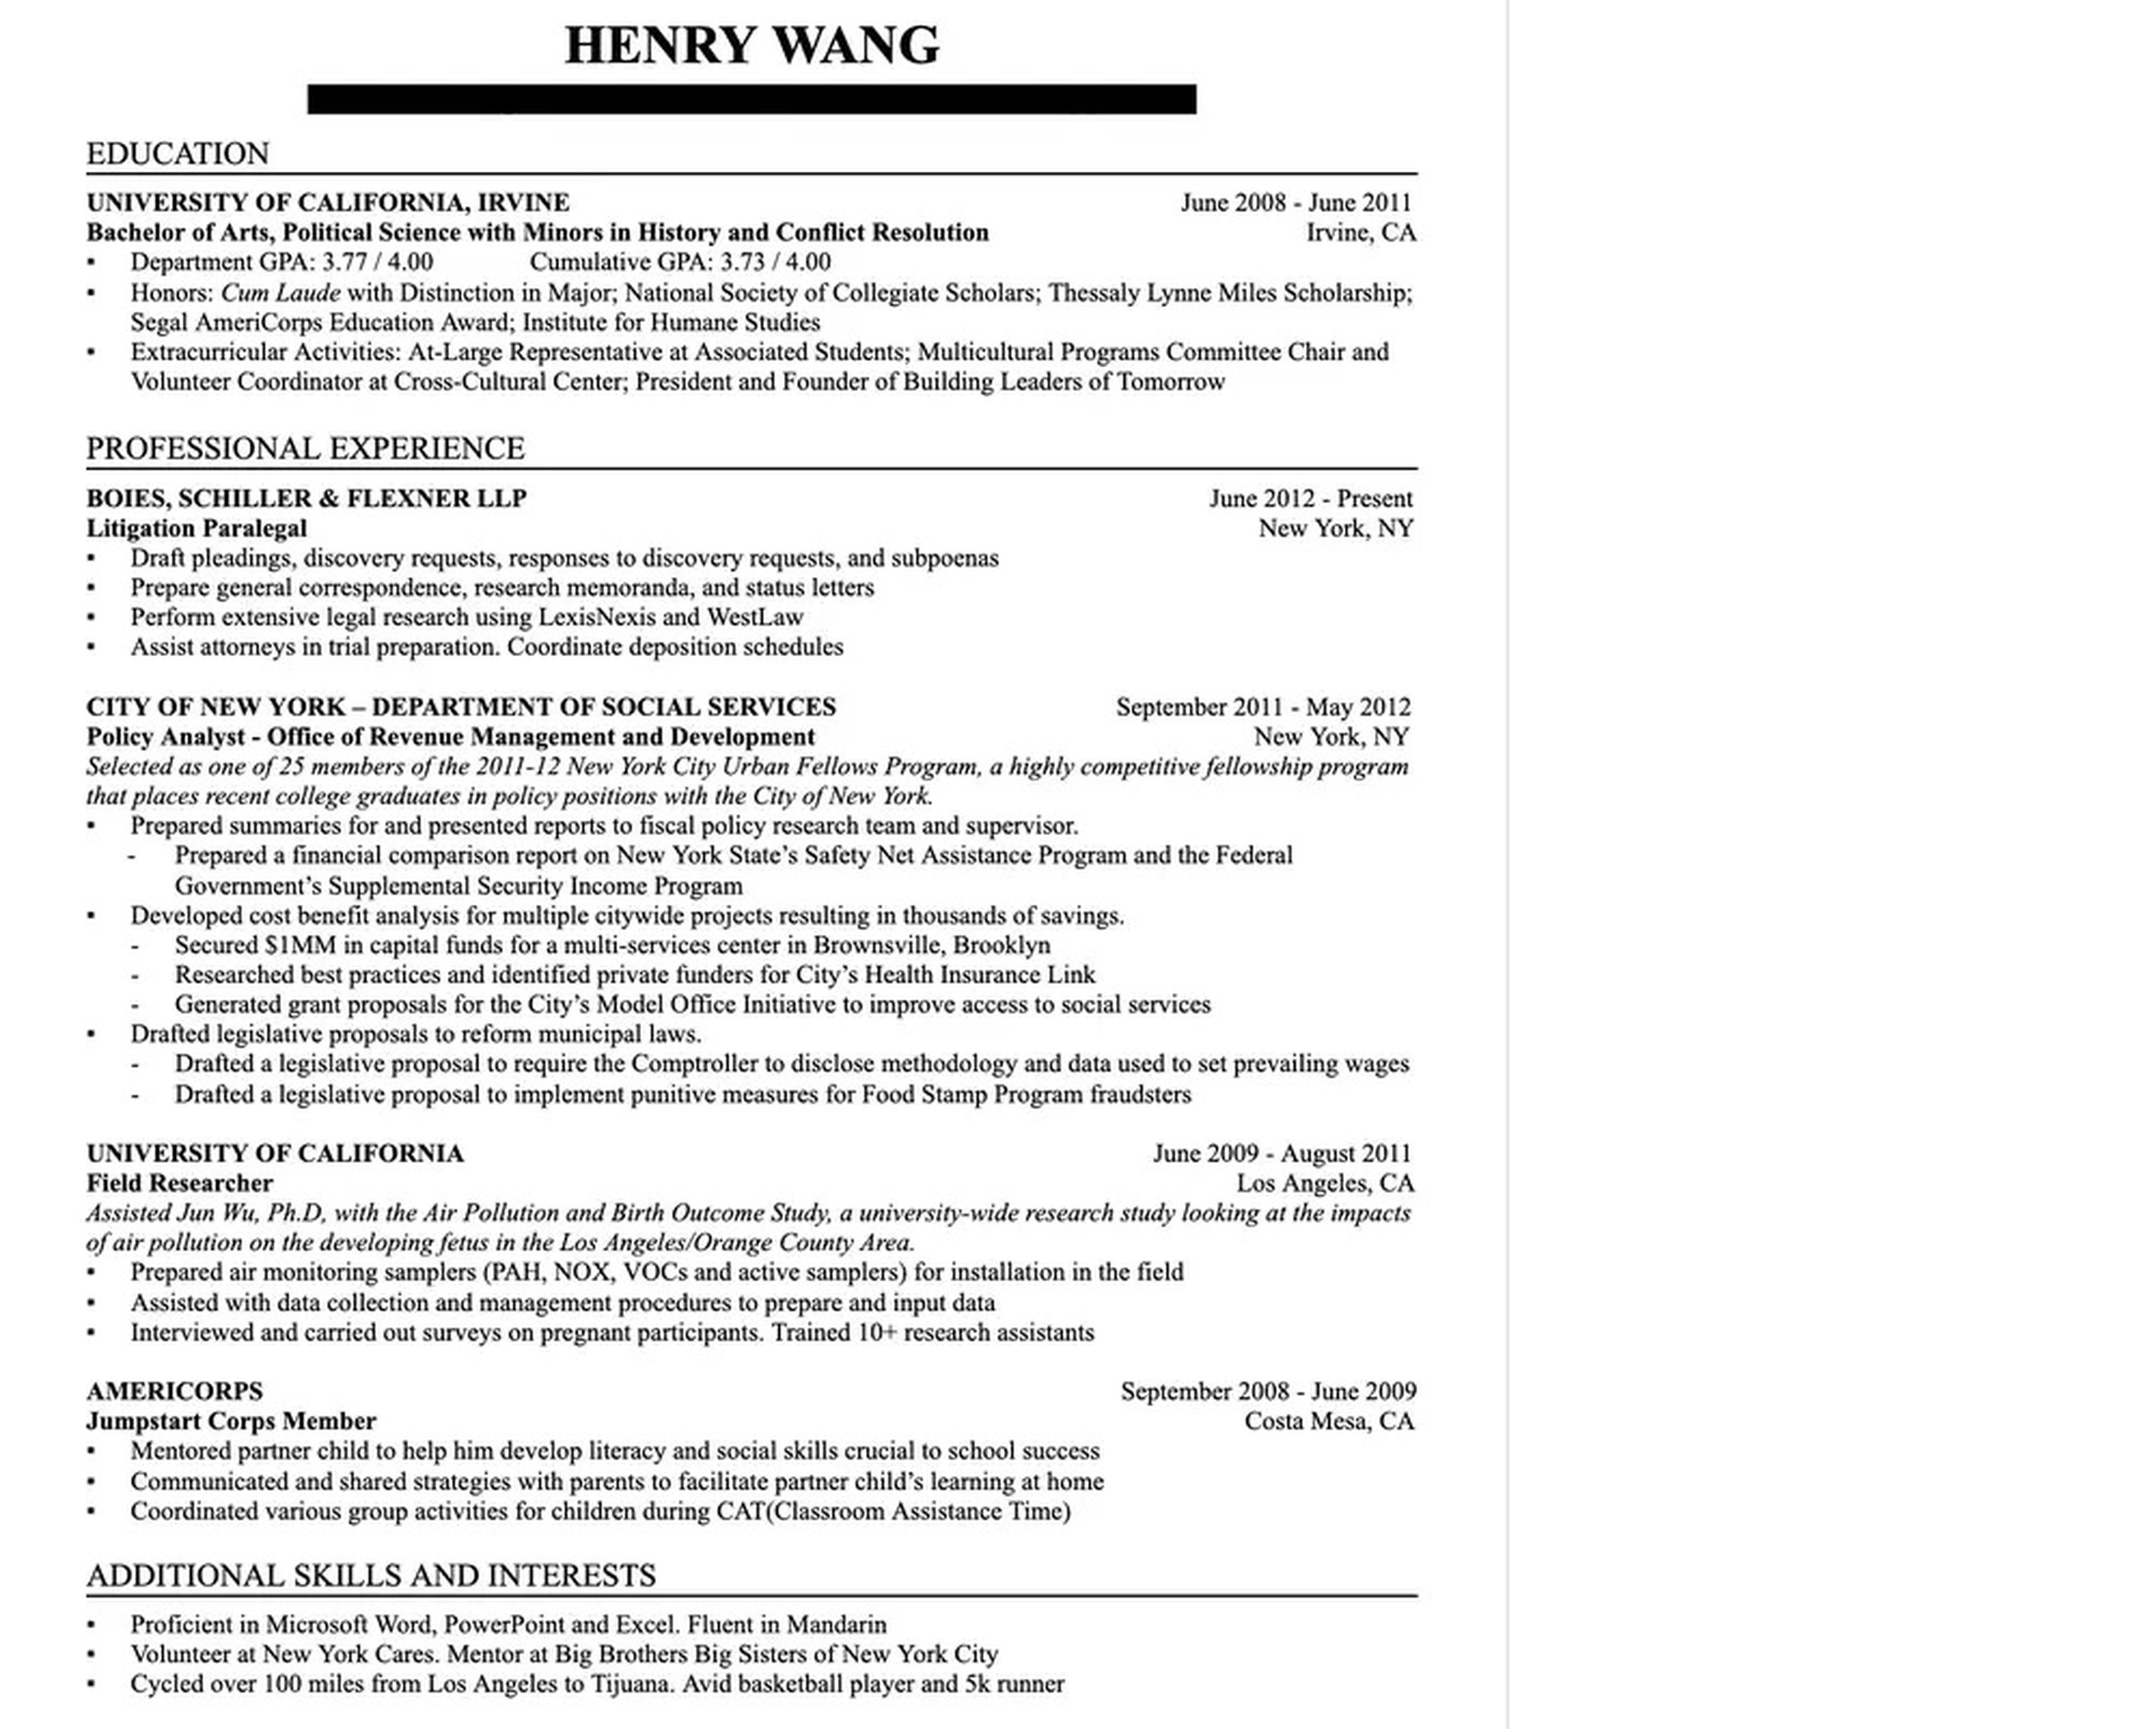 Wang utilizó este currículum para solicitar y conseguir un empleo en Google en 2013.